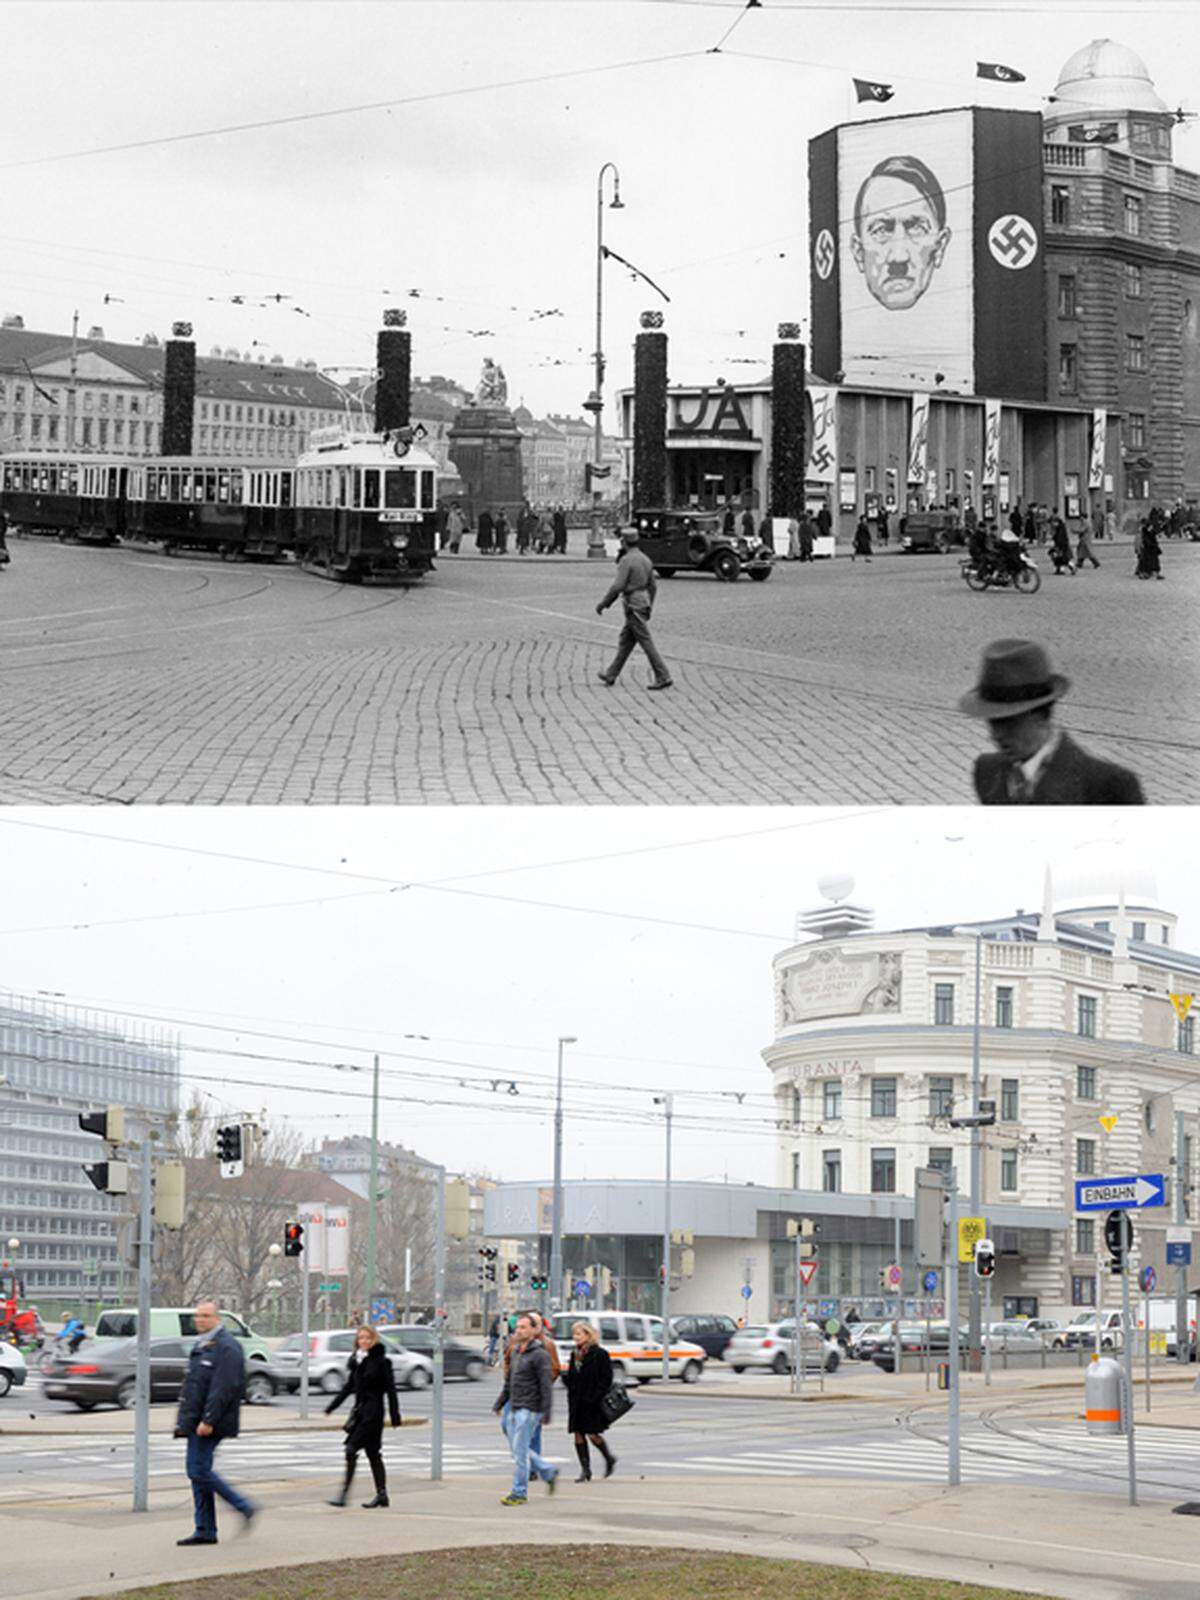 Führerkult: Auf dem Gebäude der Wiener Urania wurde ein Bild Adolf Hilters angebracht - und die Urania heute.